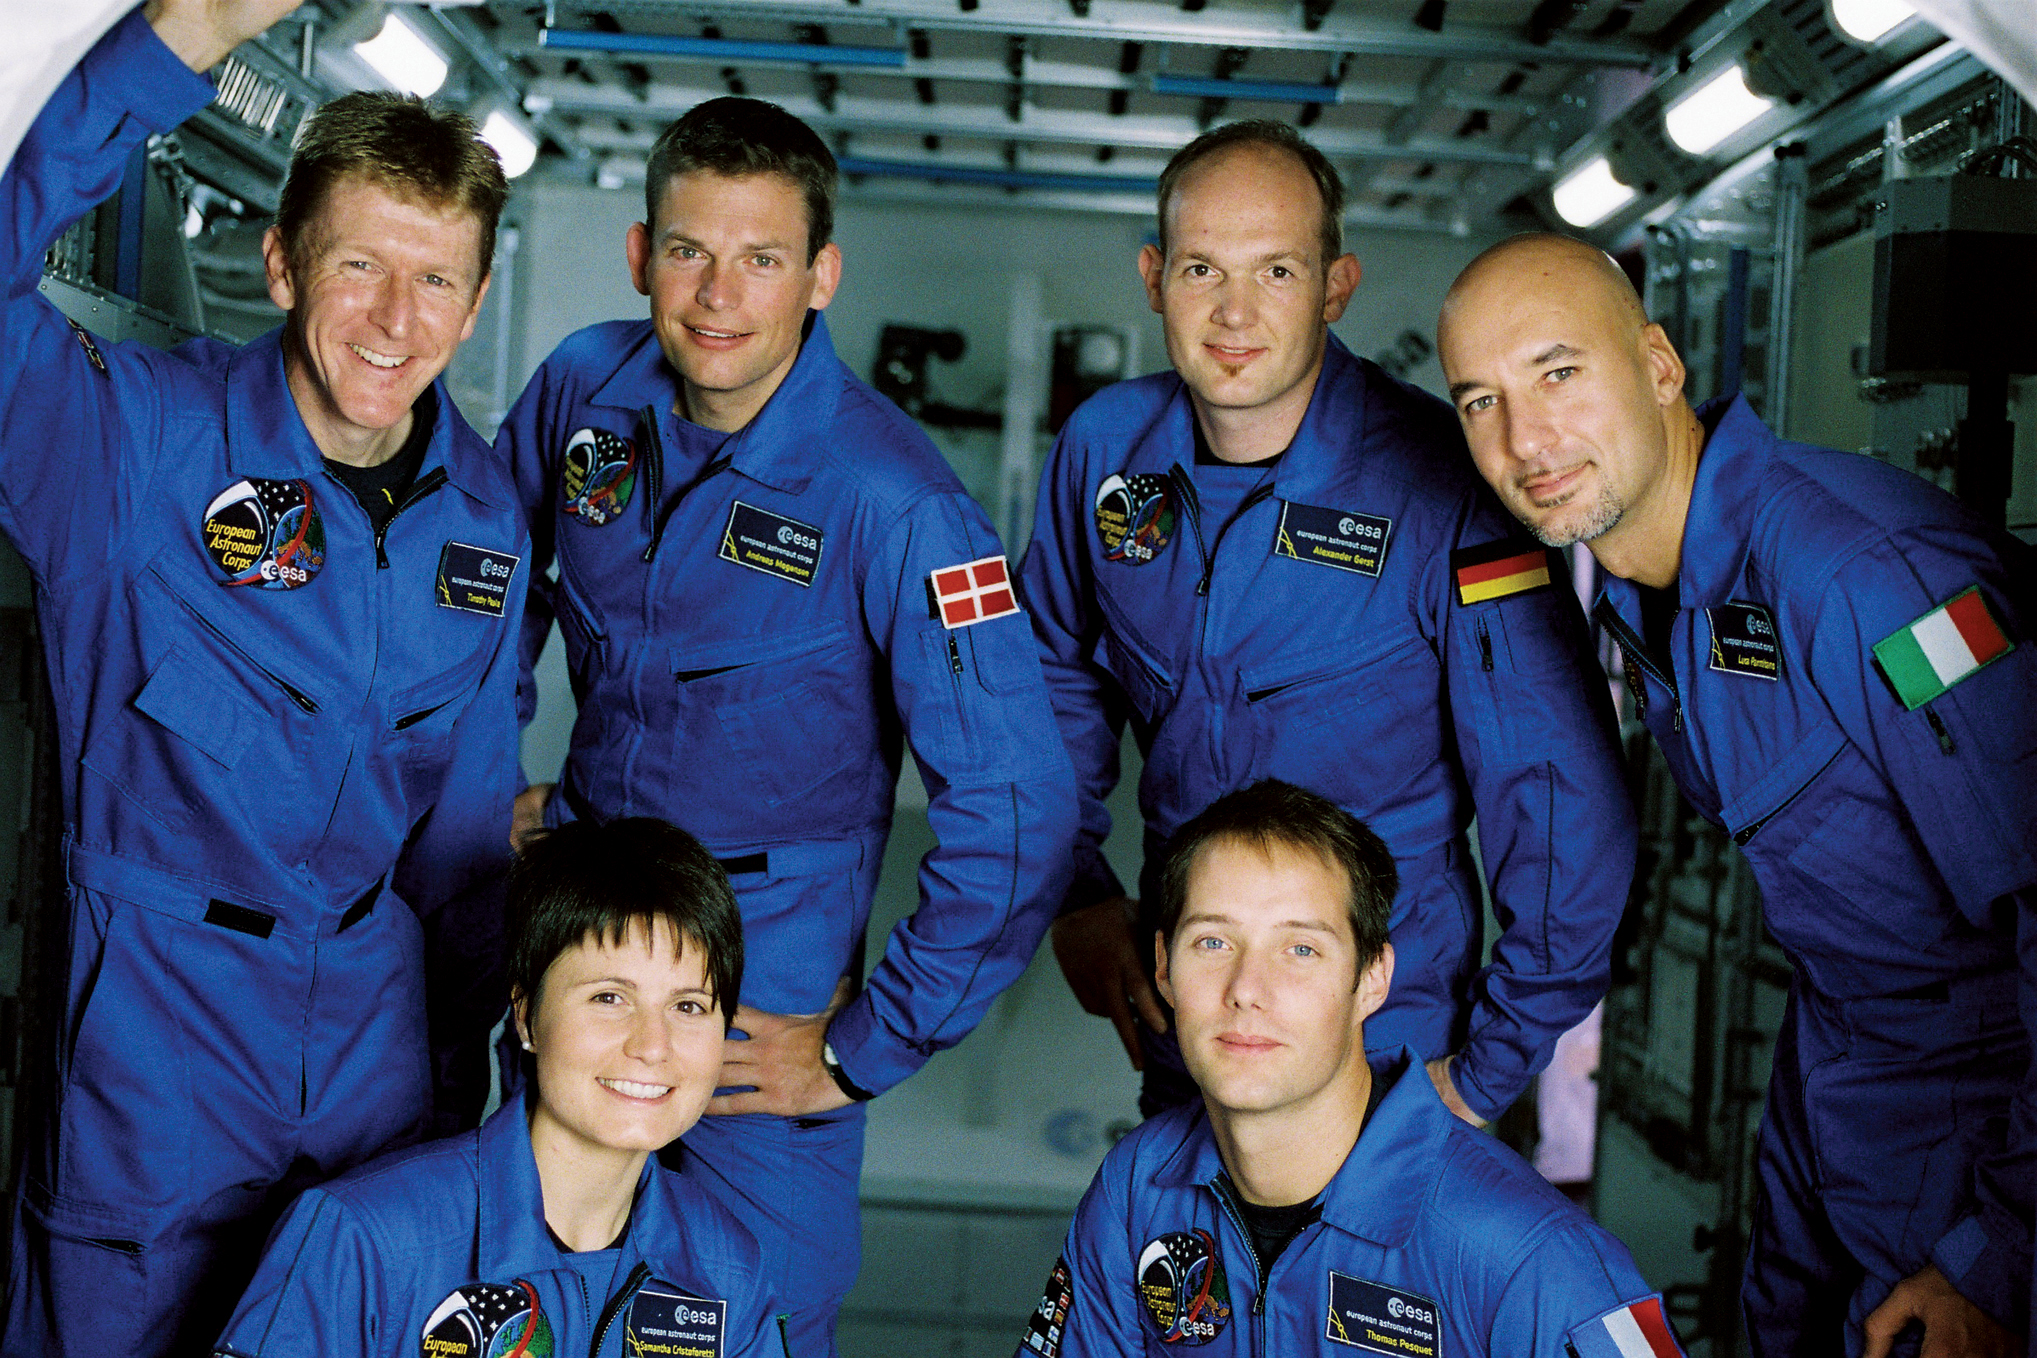 Sikeresen visszatért a Földre a Nemzetközi Űrállomásról három űrhajós